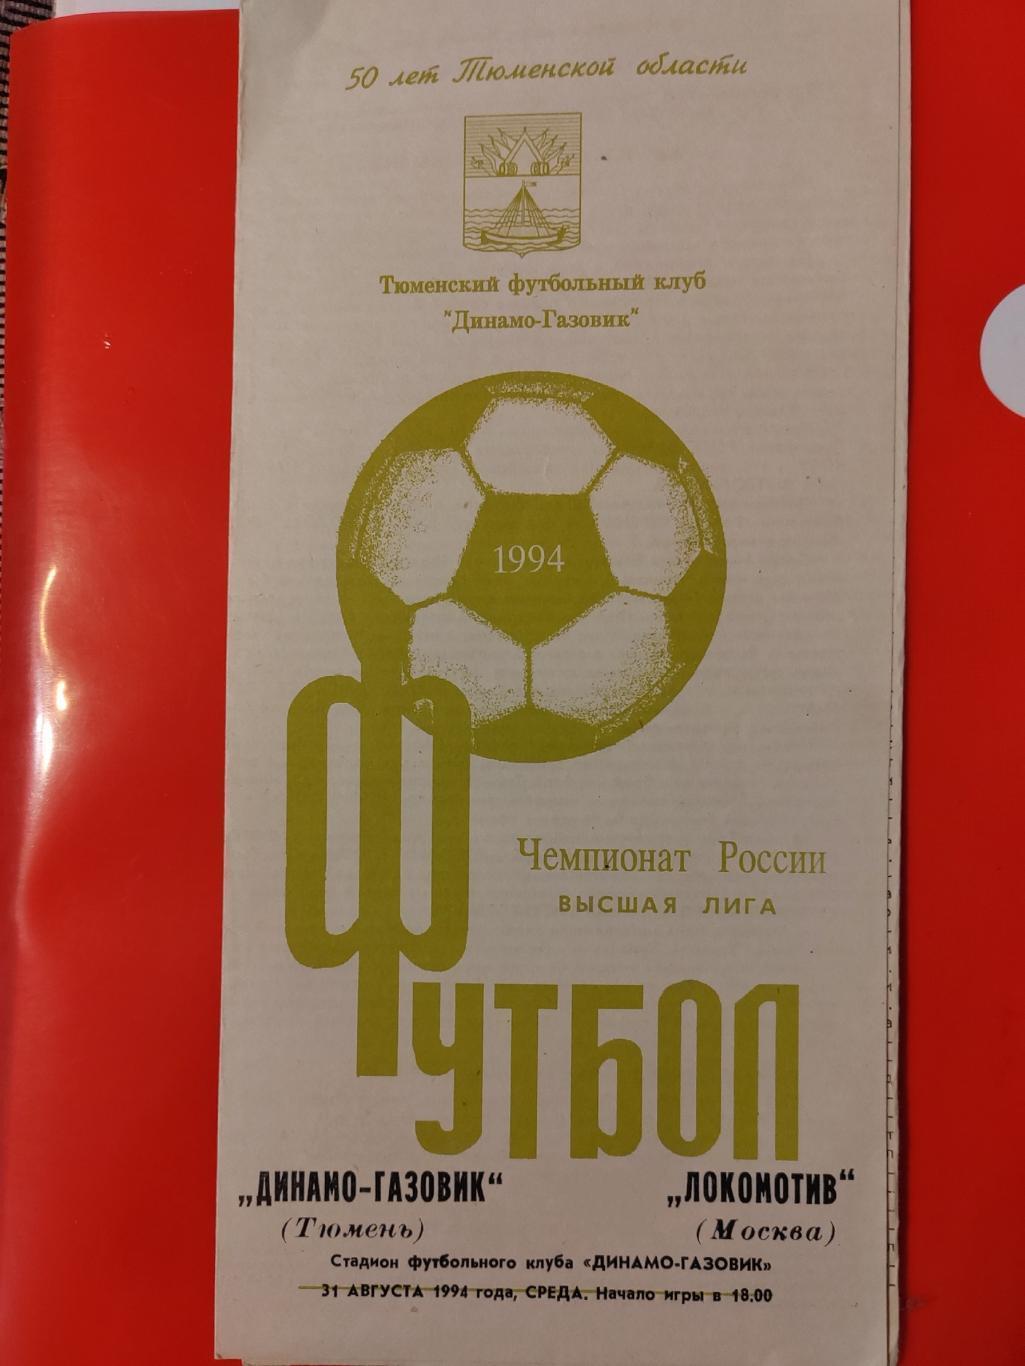 1994 Динамо-Газовик - Локомотив (Москва)